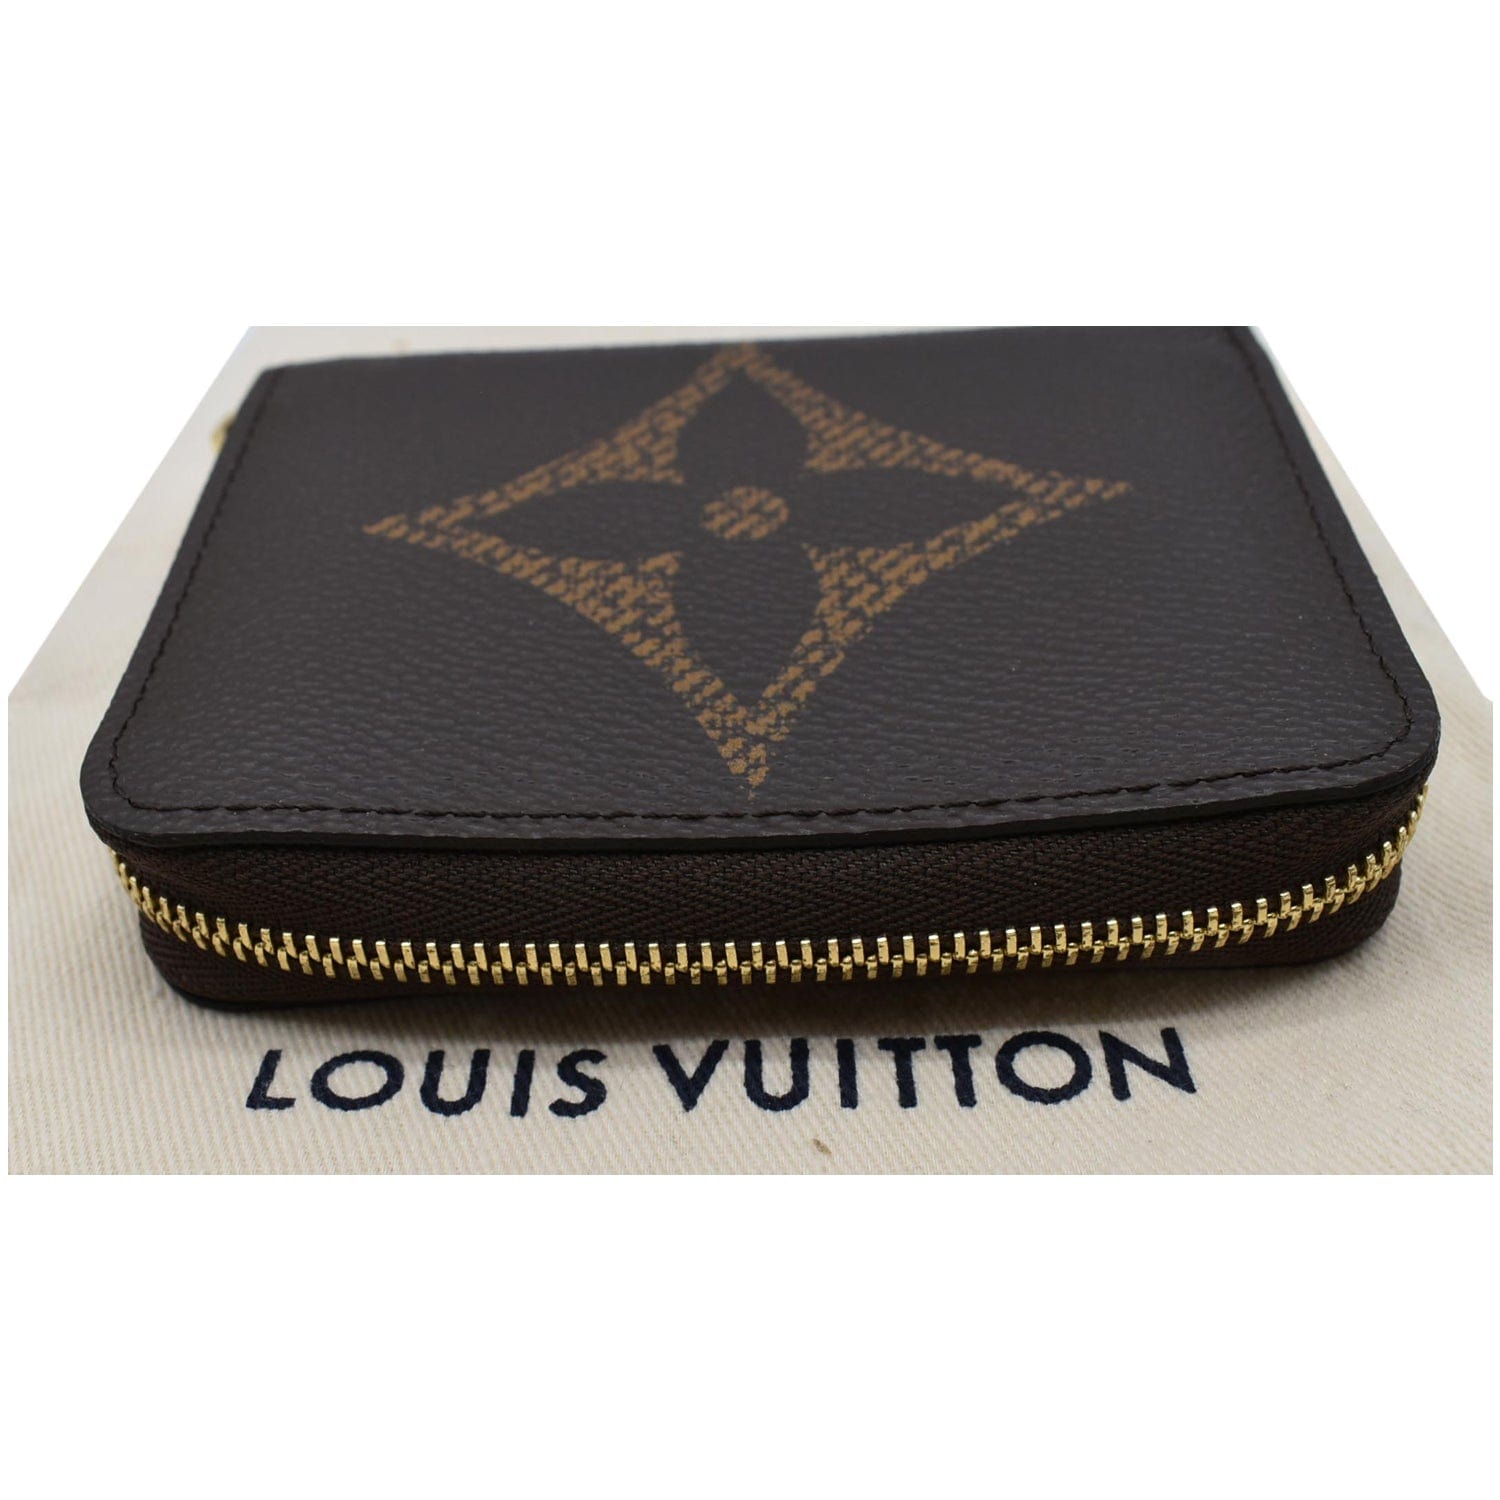 Louis Vuitton Small Zippy Coin Purse in Bicolour Giant Monogram Empreinte  Crème Tourterelle Grey - SOLD